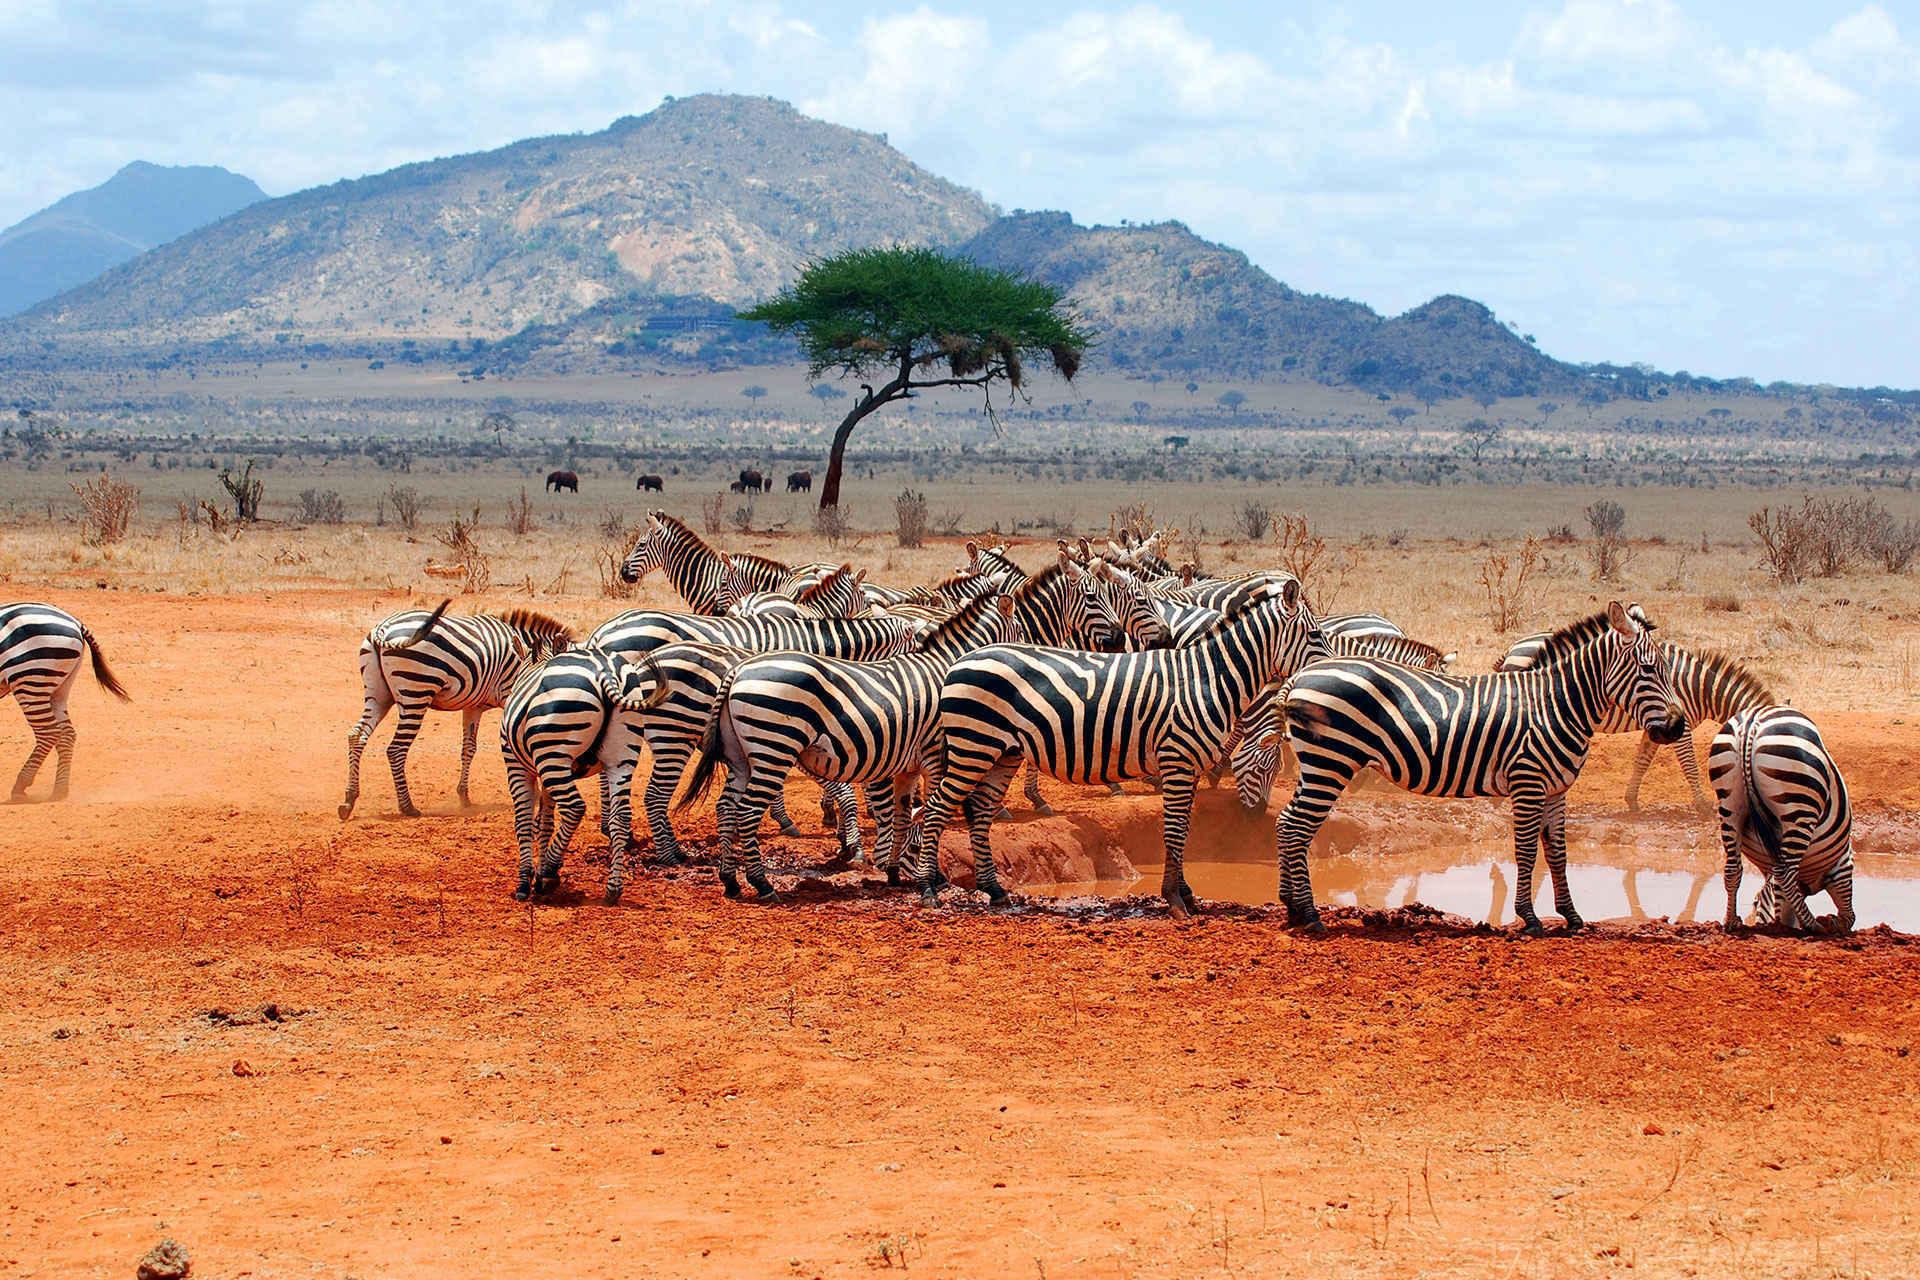 Zebras in Africa